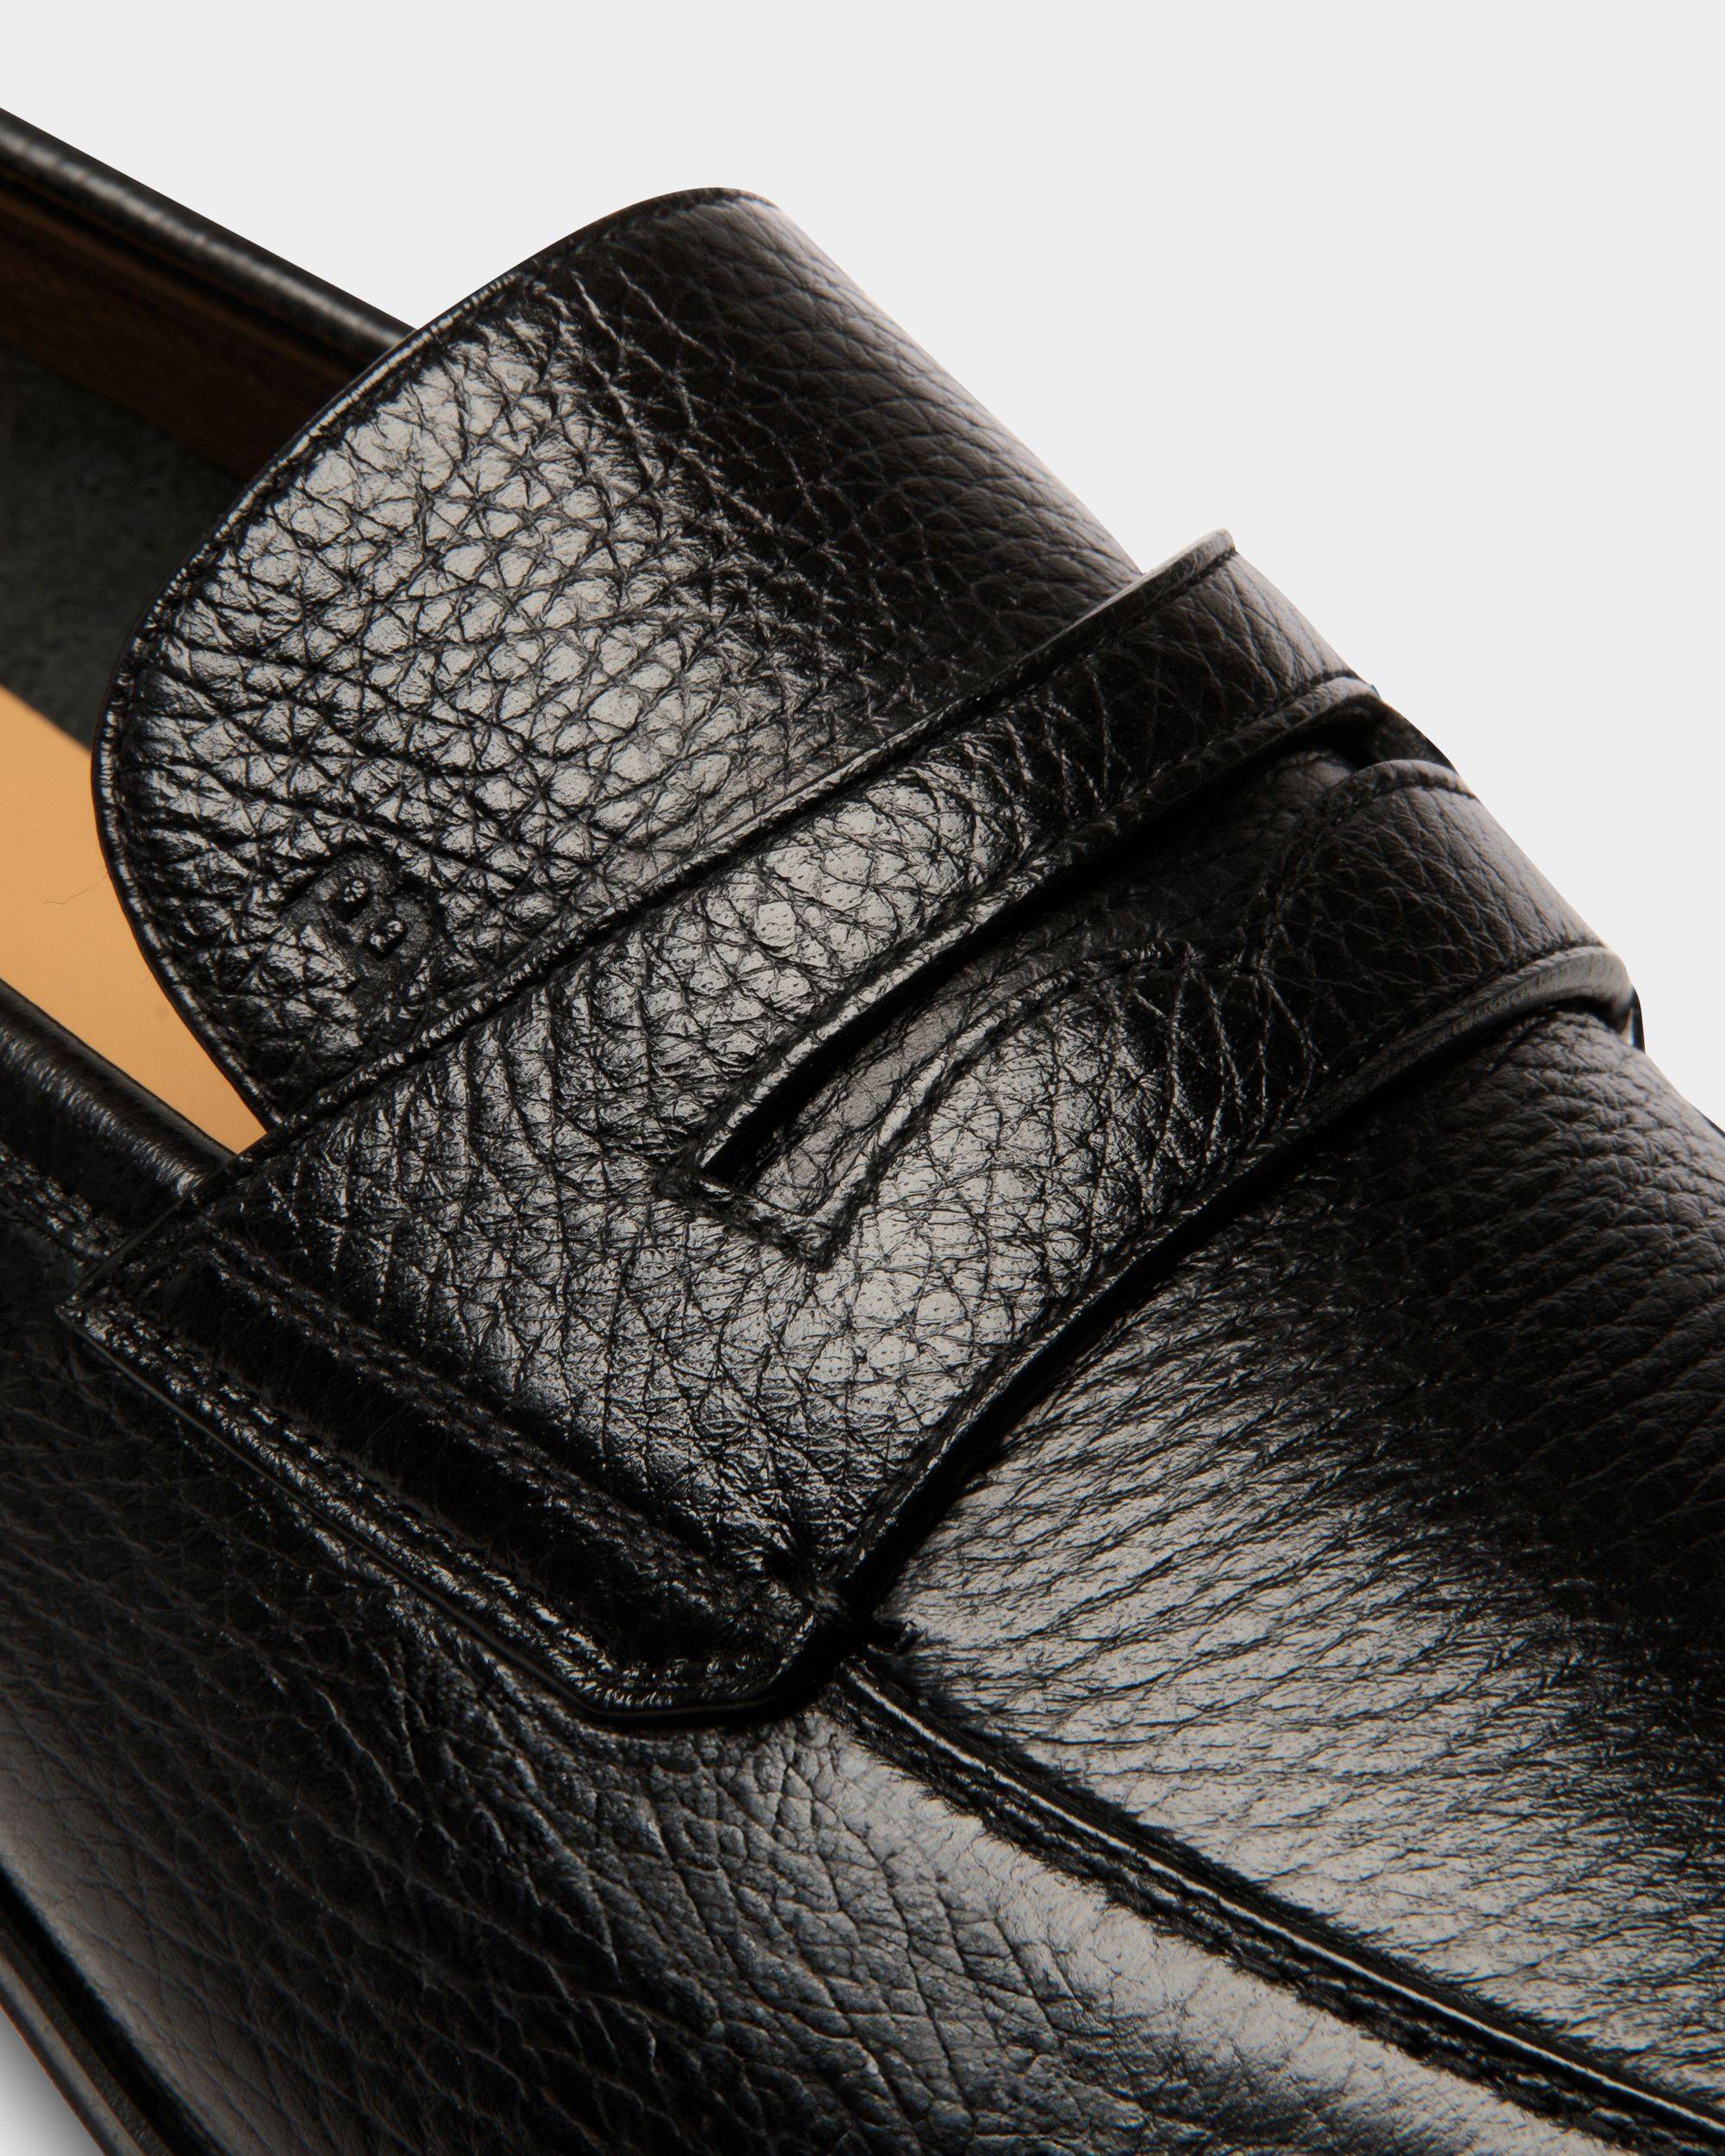 Westminster Loafer in Black Deer Leather - Men's - Bally - 04